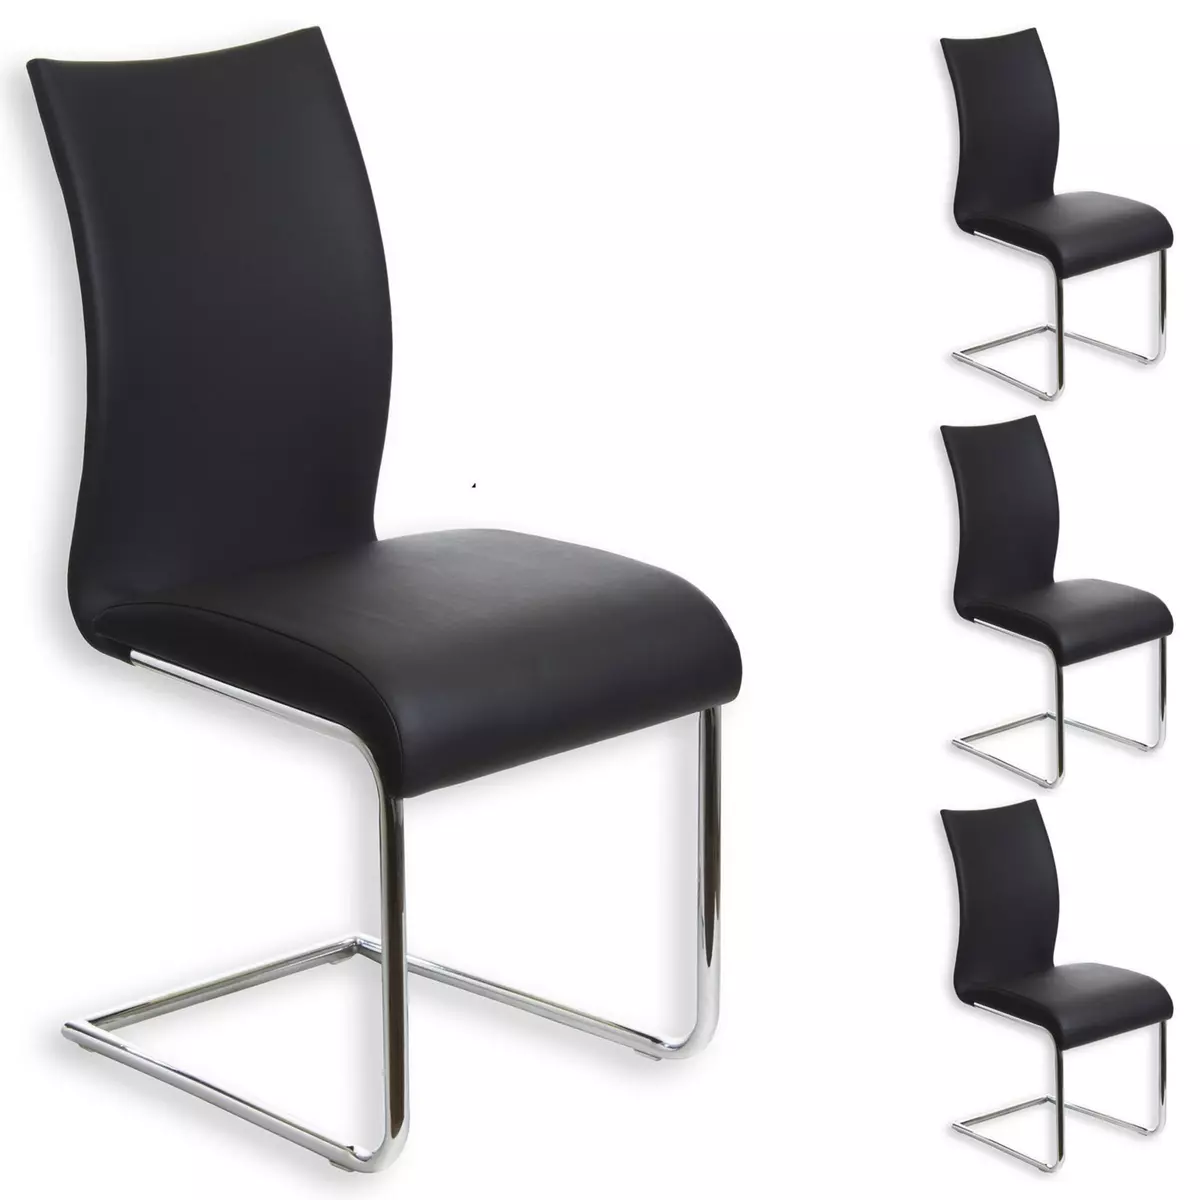 IDIMEX Lot de 4 chaises de salle à manger ALADINO piètement chromé revêtement synthétique noir